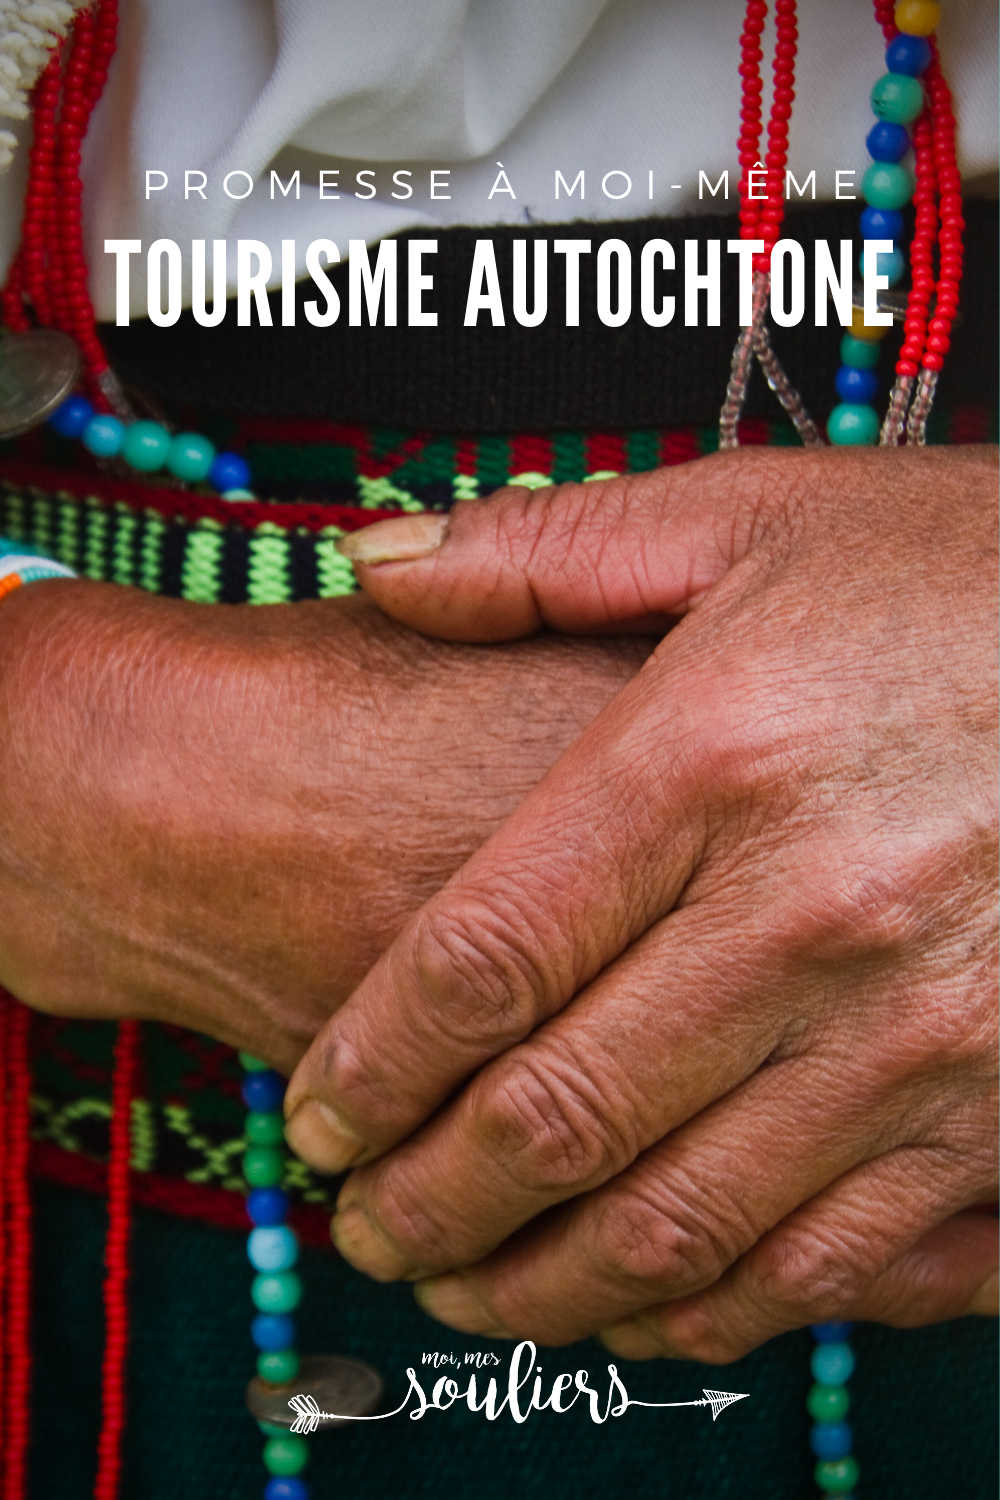 Tourisme autochtone au Québec et au Canada